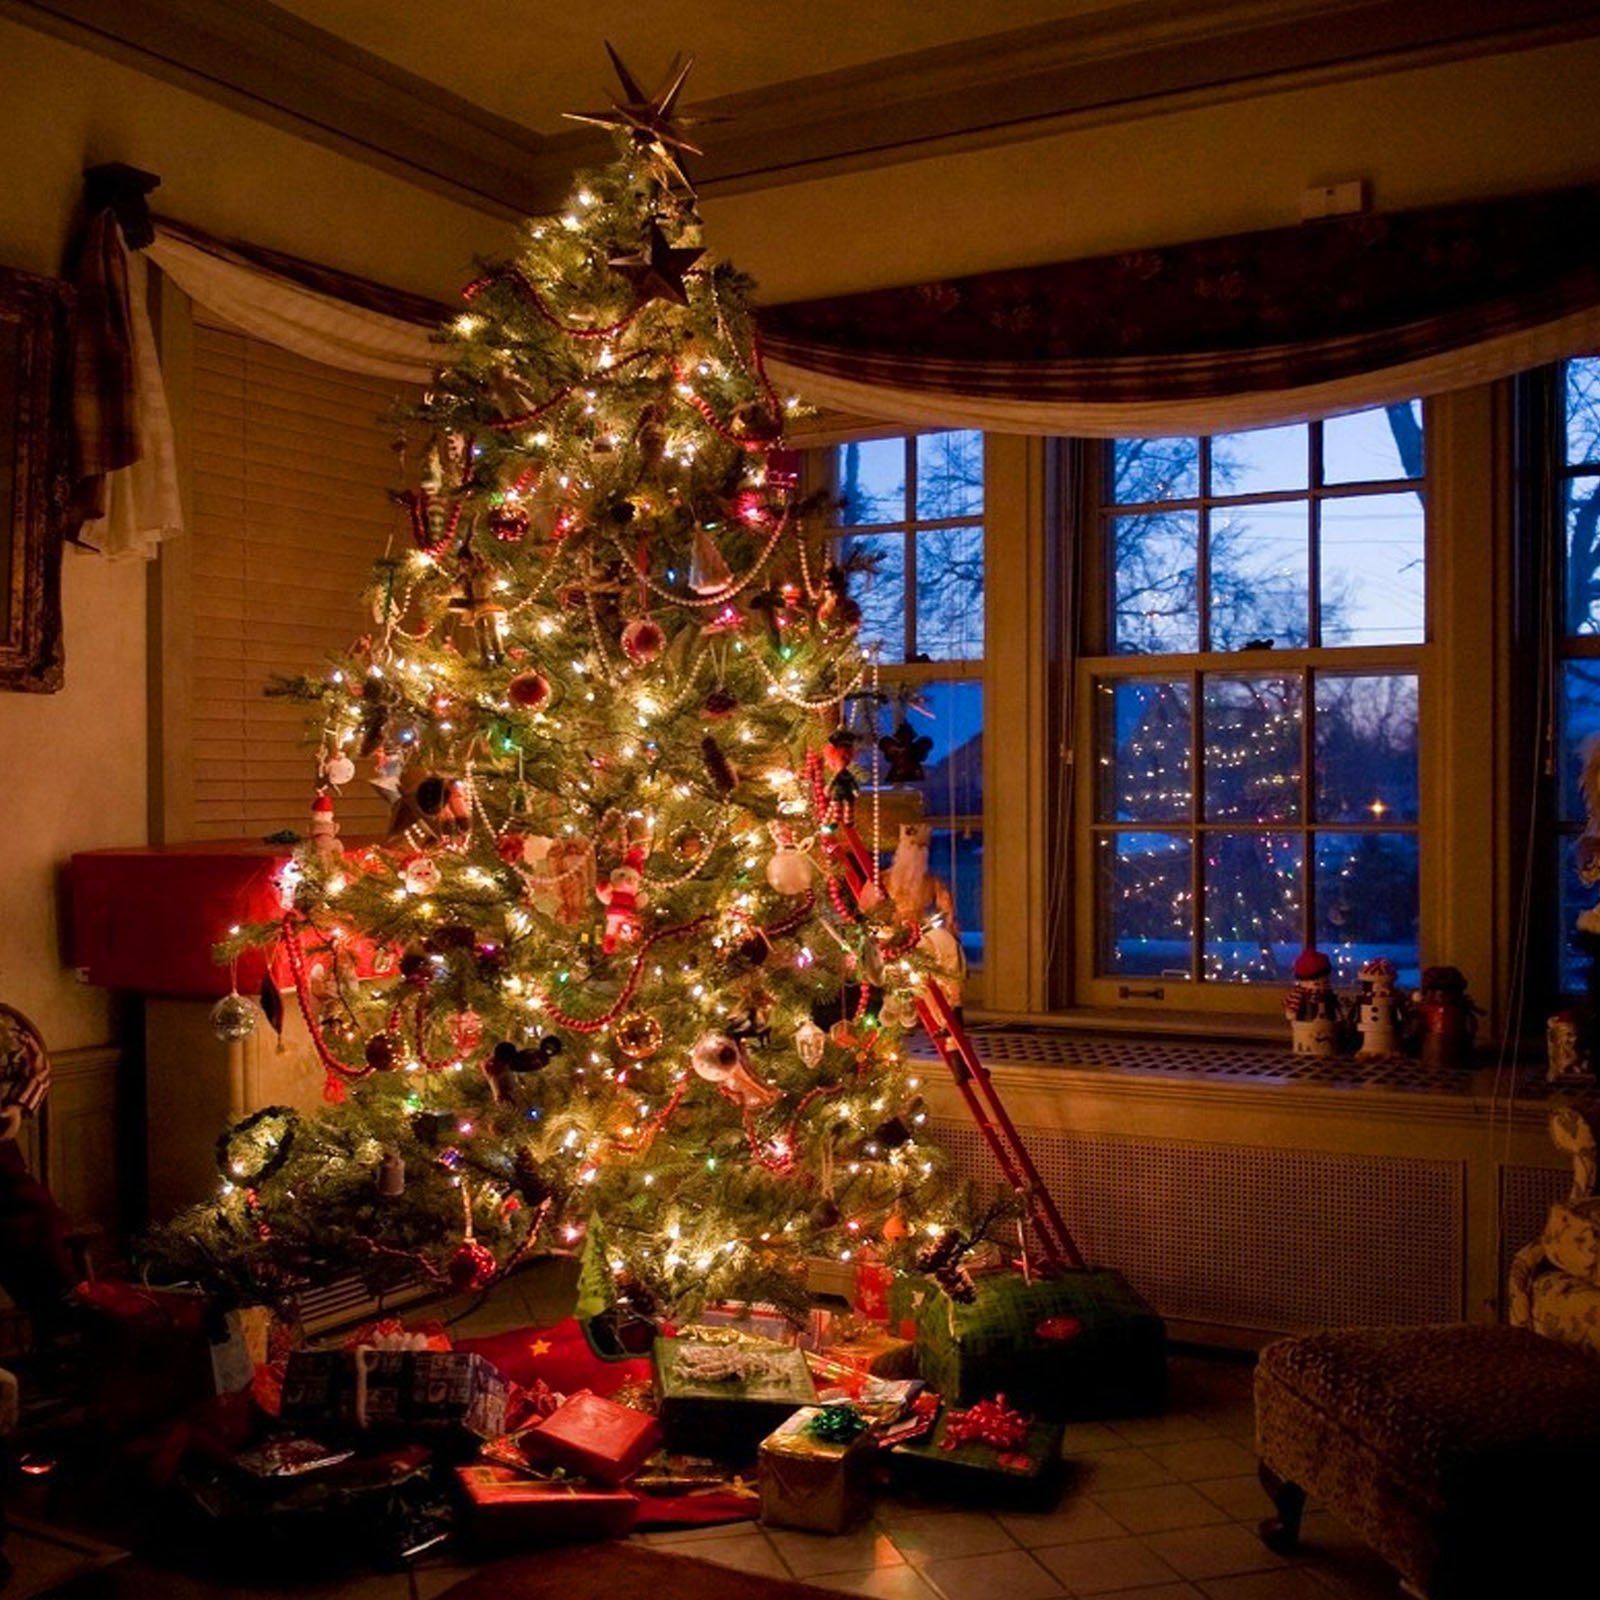 Sunicol LED-Lichterkette Timer LED Weihnachtsbeleuchtung, 8 Außen für Modi Weihnachtsbaum 50/100M Party, Weihnachten, Strom, Hochzeit Innen Deko, Schlafzimmer